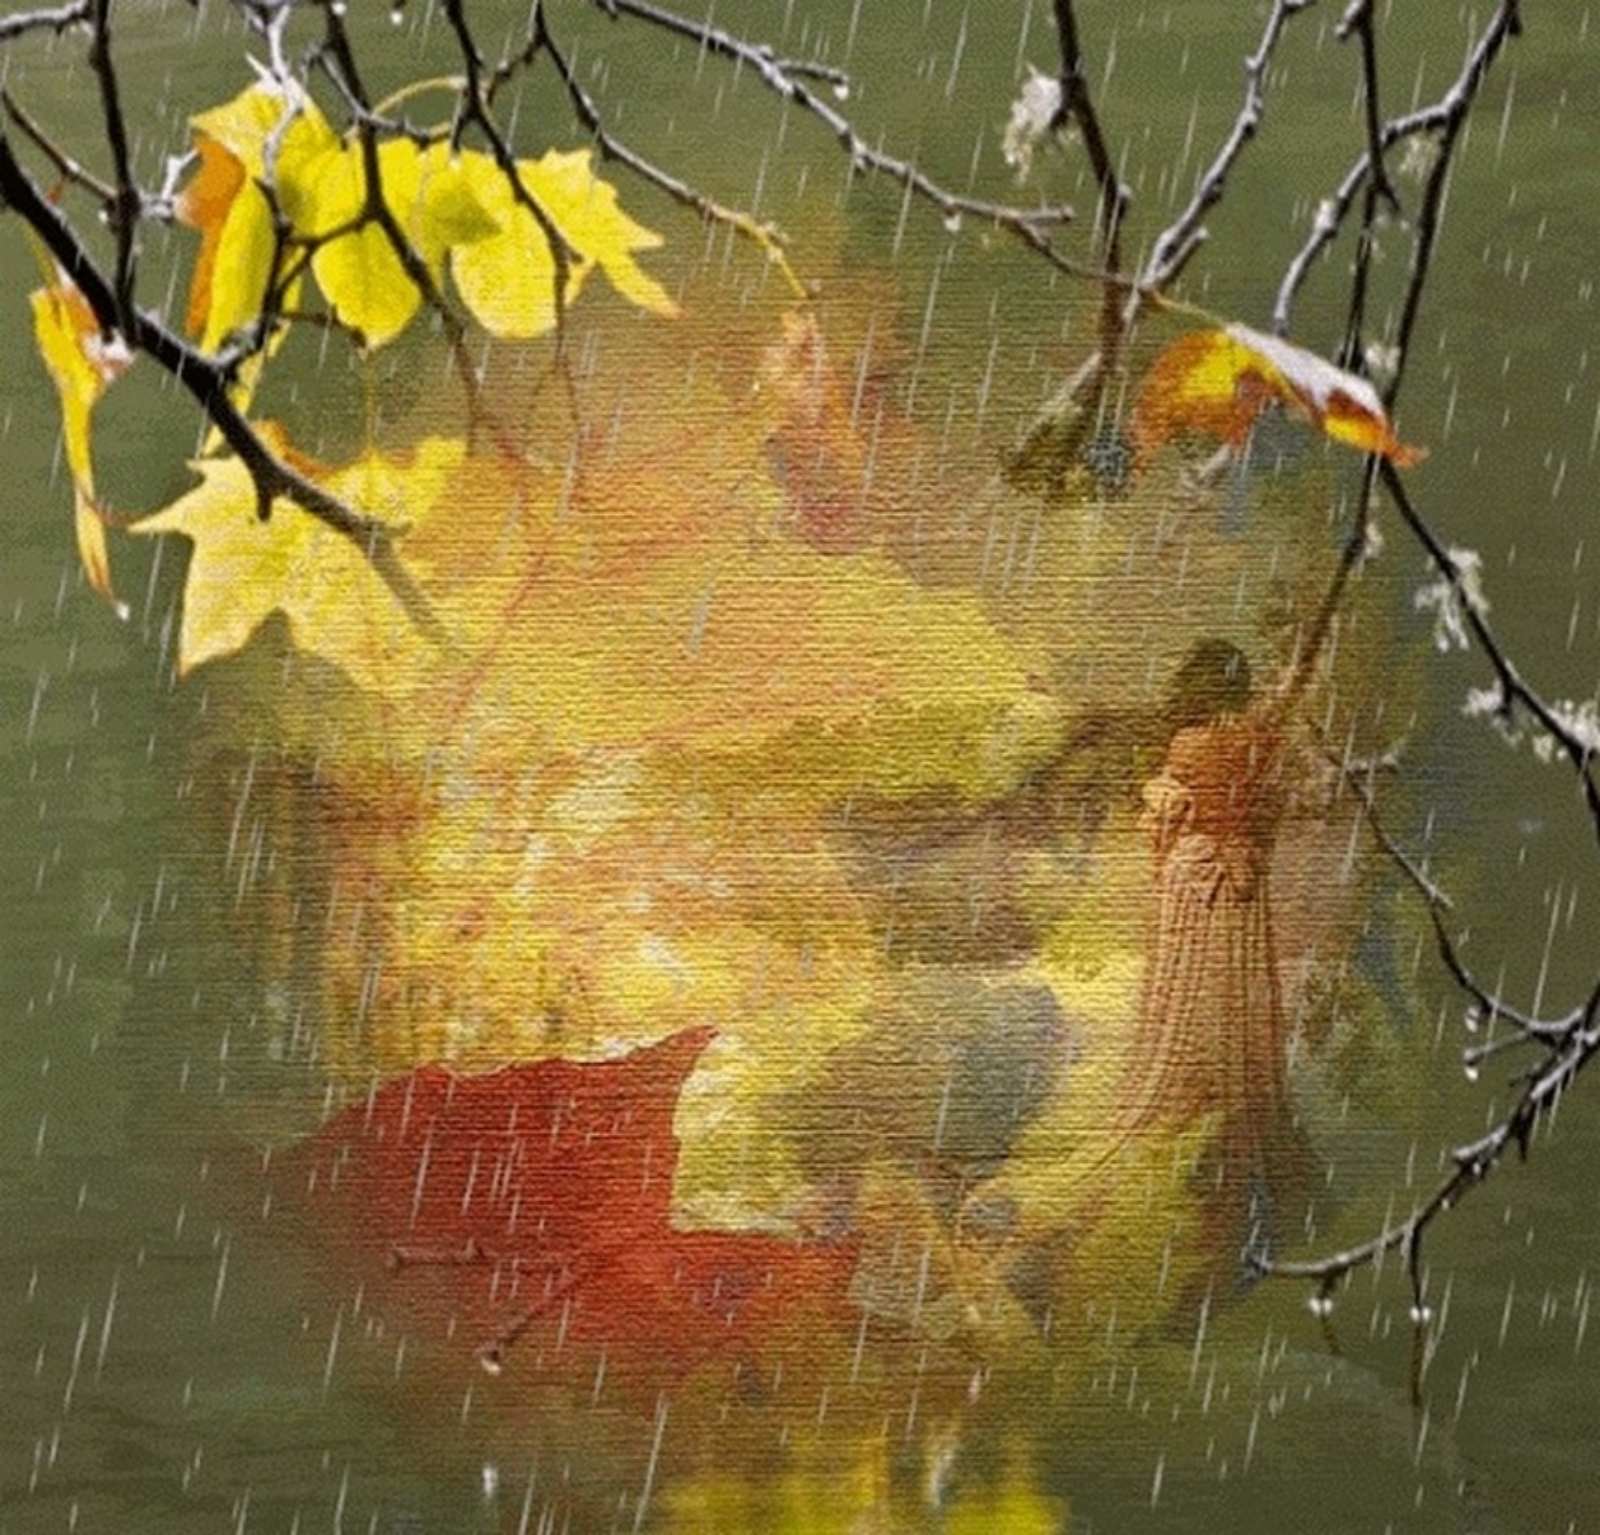 Jazzdauren идут дожди смывая печаль. Дождливая осень. Осень дождь. Осень листопад дождь. Осенняя грусть.